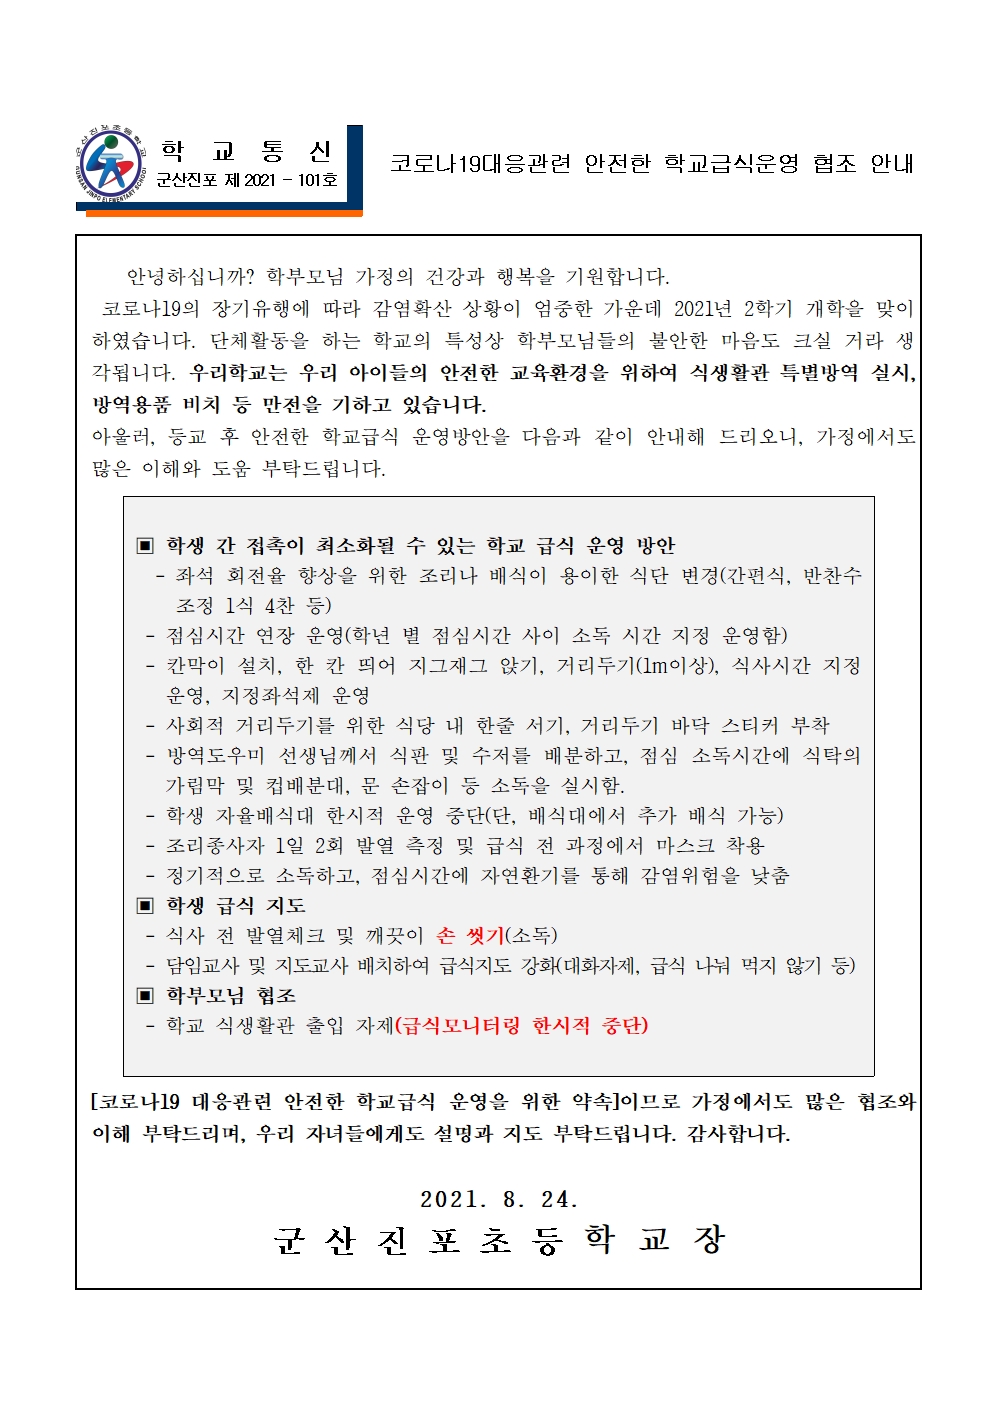 코로나19 대응 관련 2학기 학교급식 운영 방안 안내001